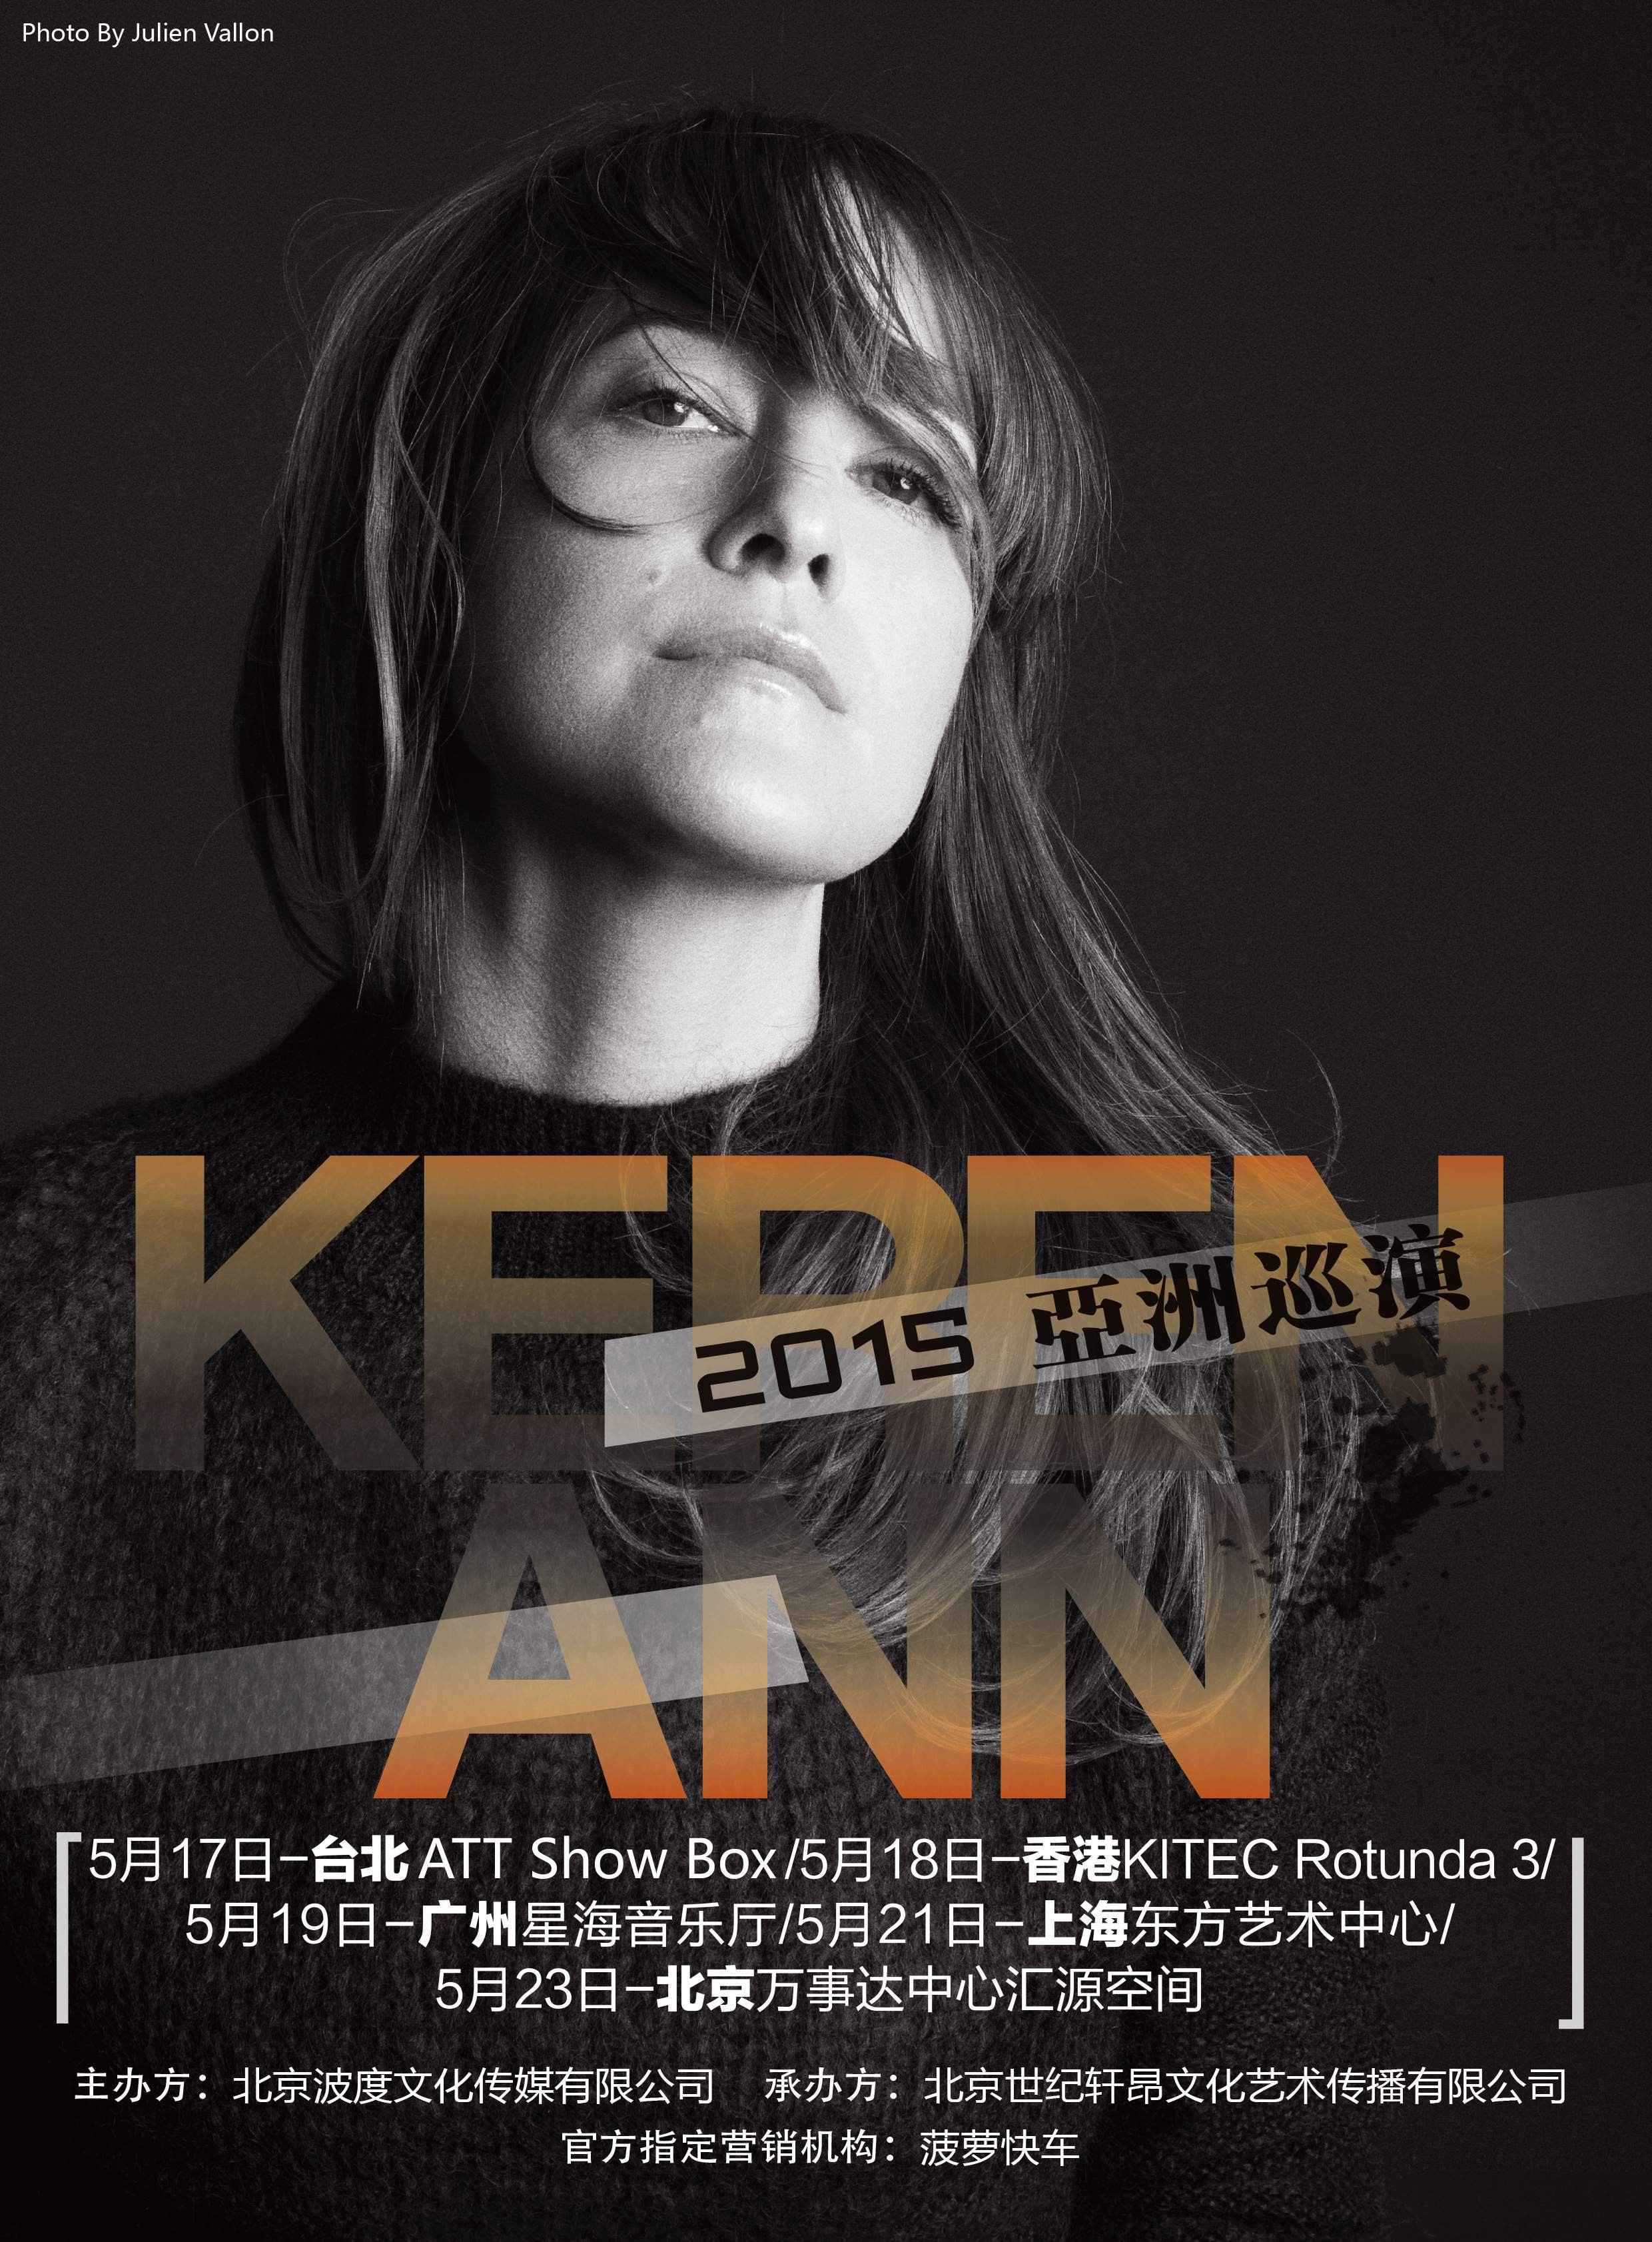 公告牌丨香颂天后Keren Ann 2015中国巡回演唱会